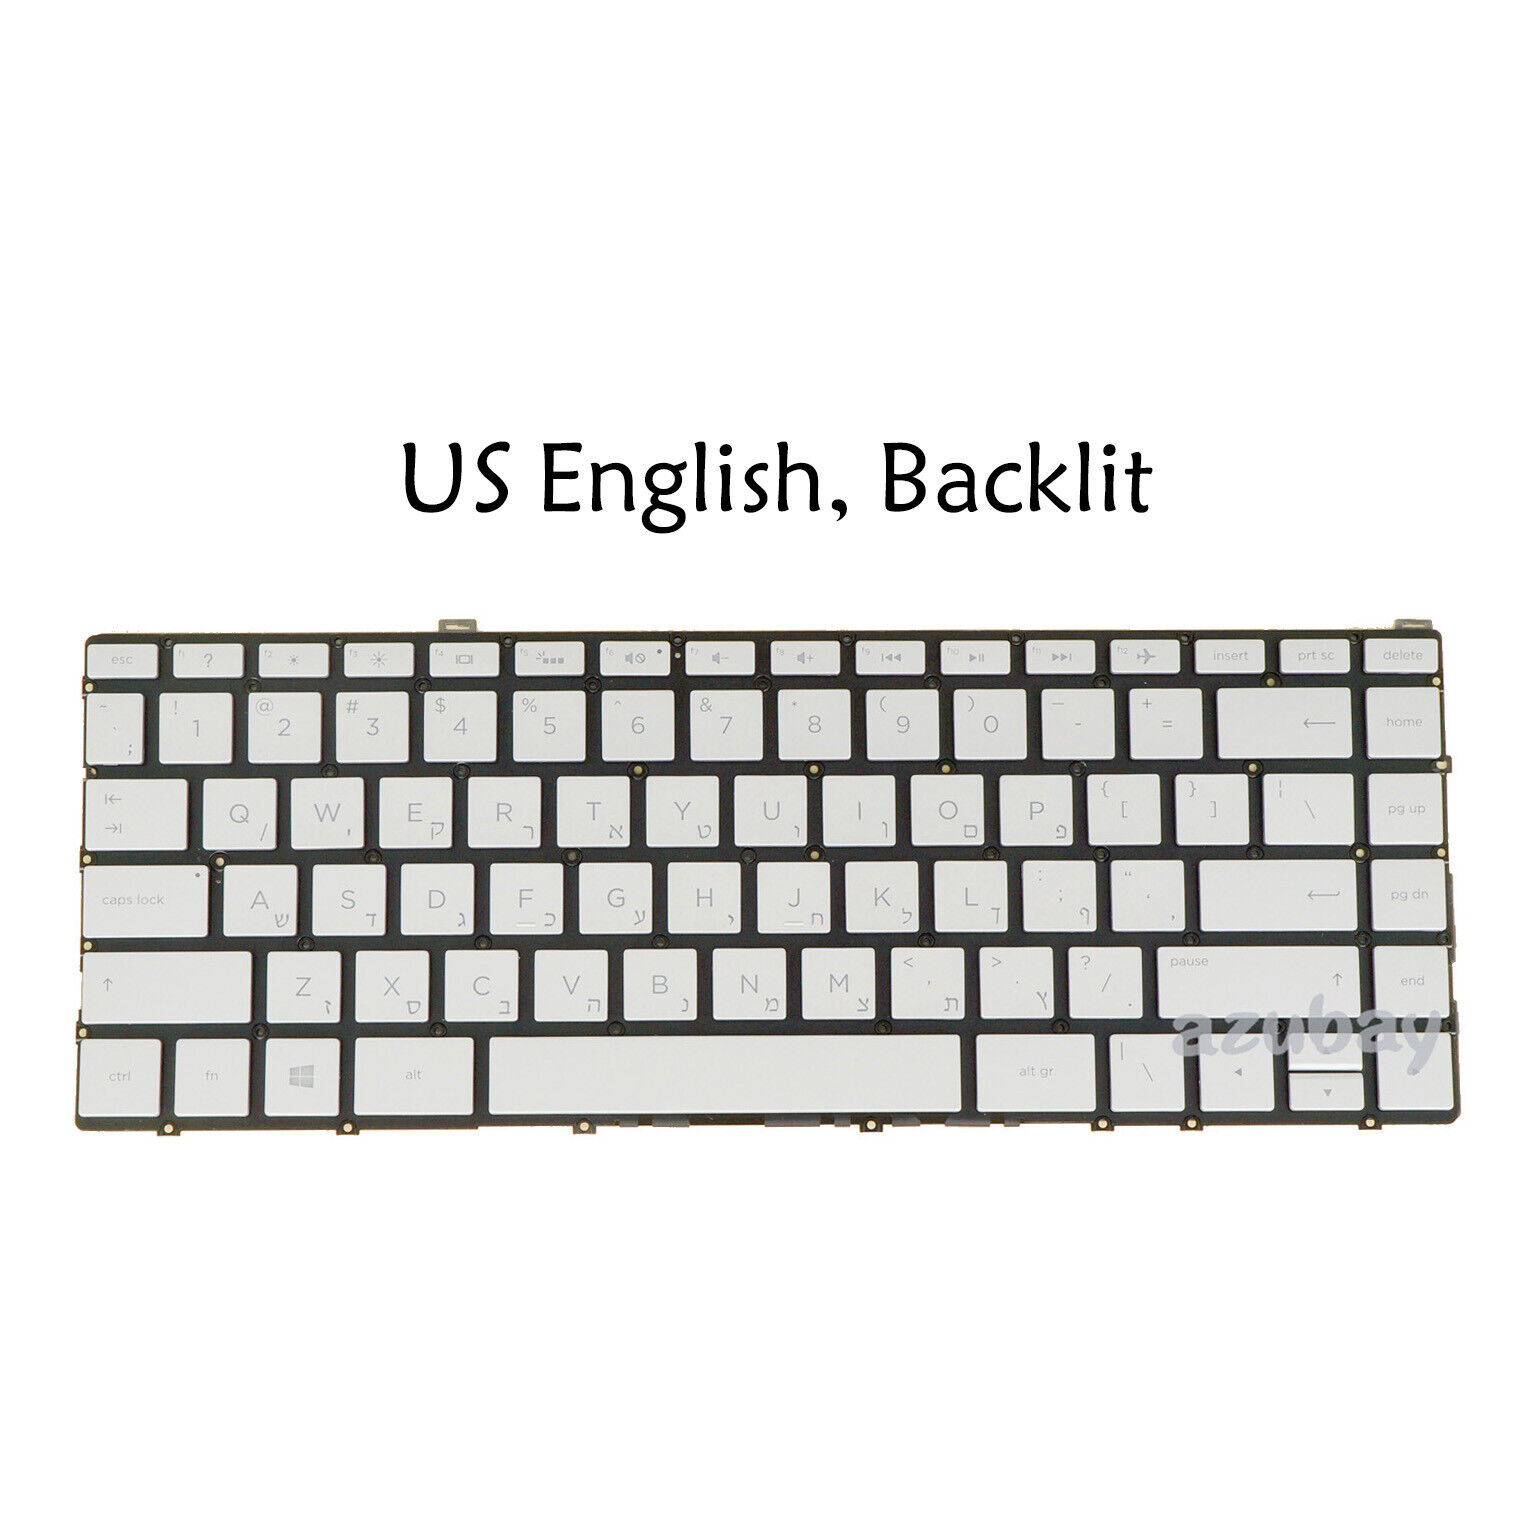 Keyboard for HP Spectre 13-w 13-w000 13t-w000  13-ac 13-ac000 13t-ac000, Backlit